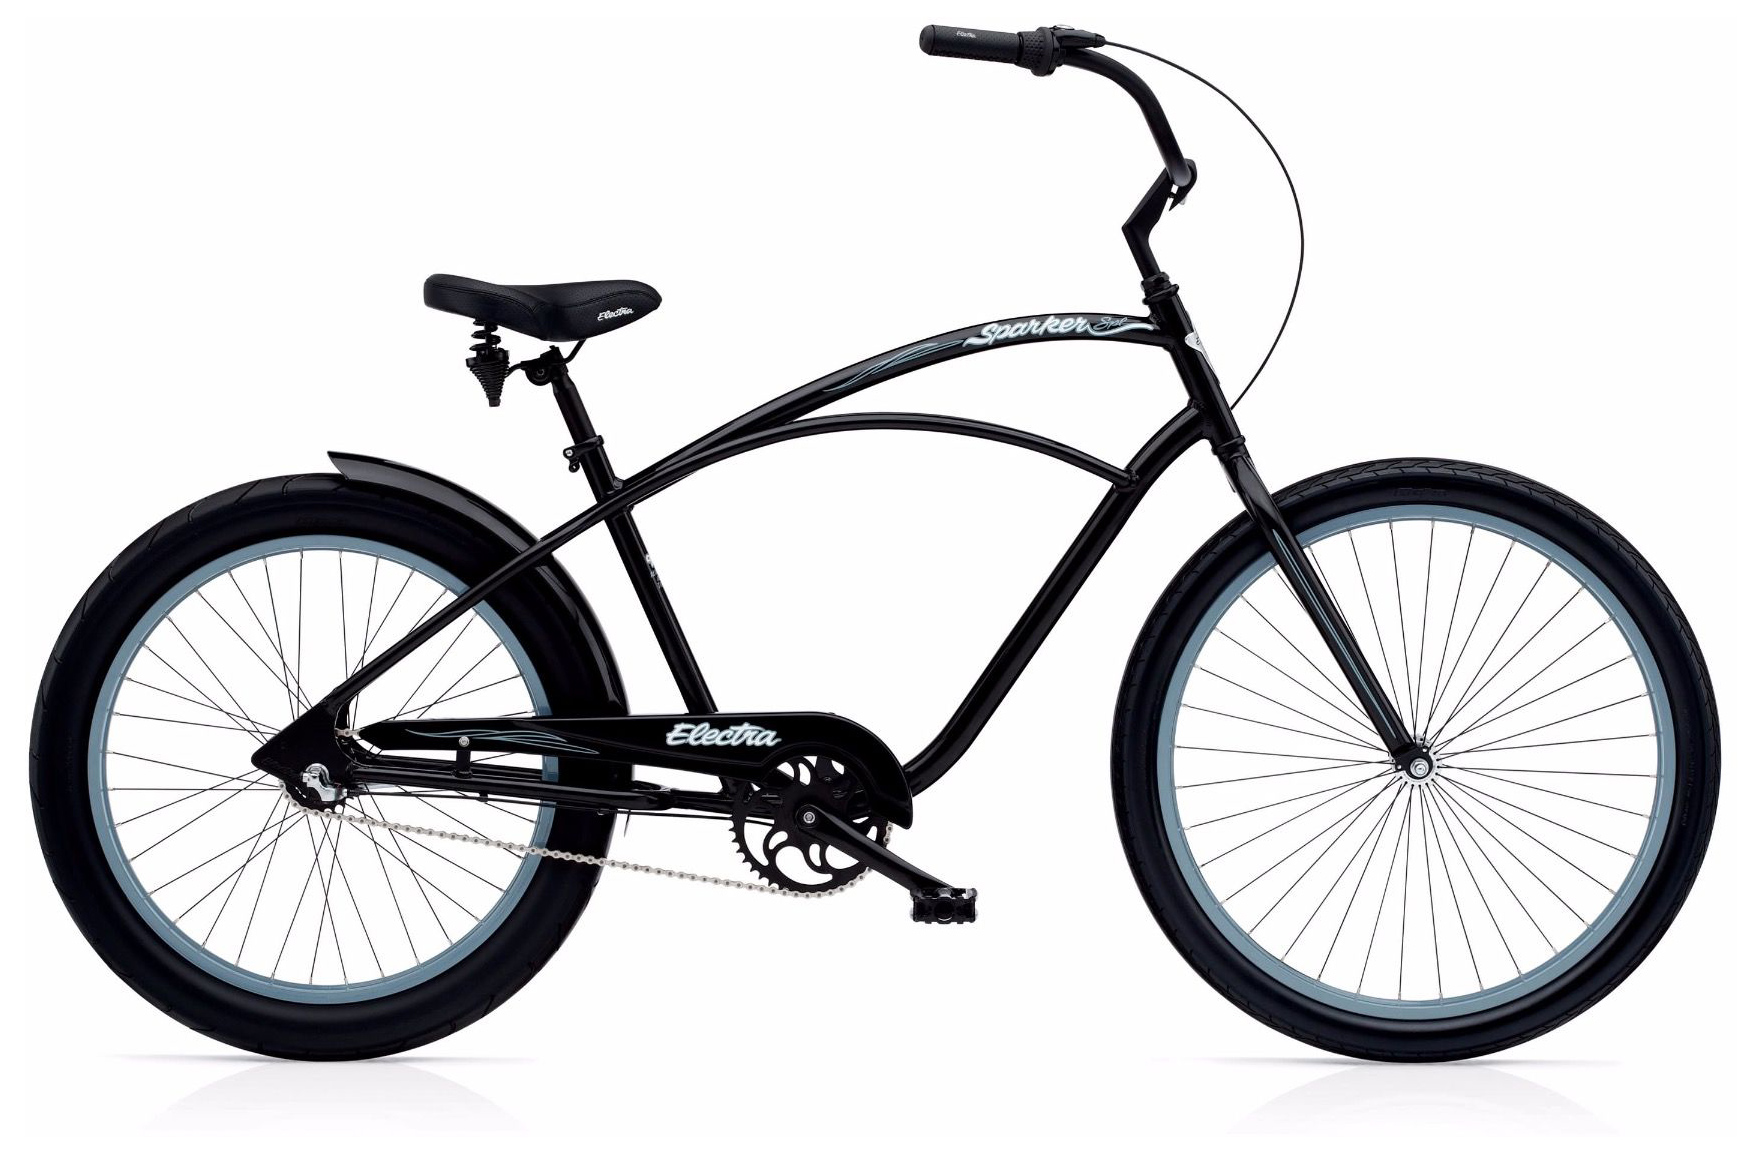  Отзывы о Велосипеде круизере Electra Sparker Special 3i 2019